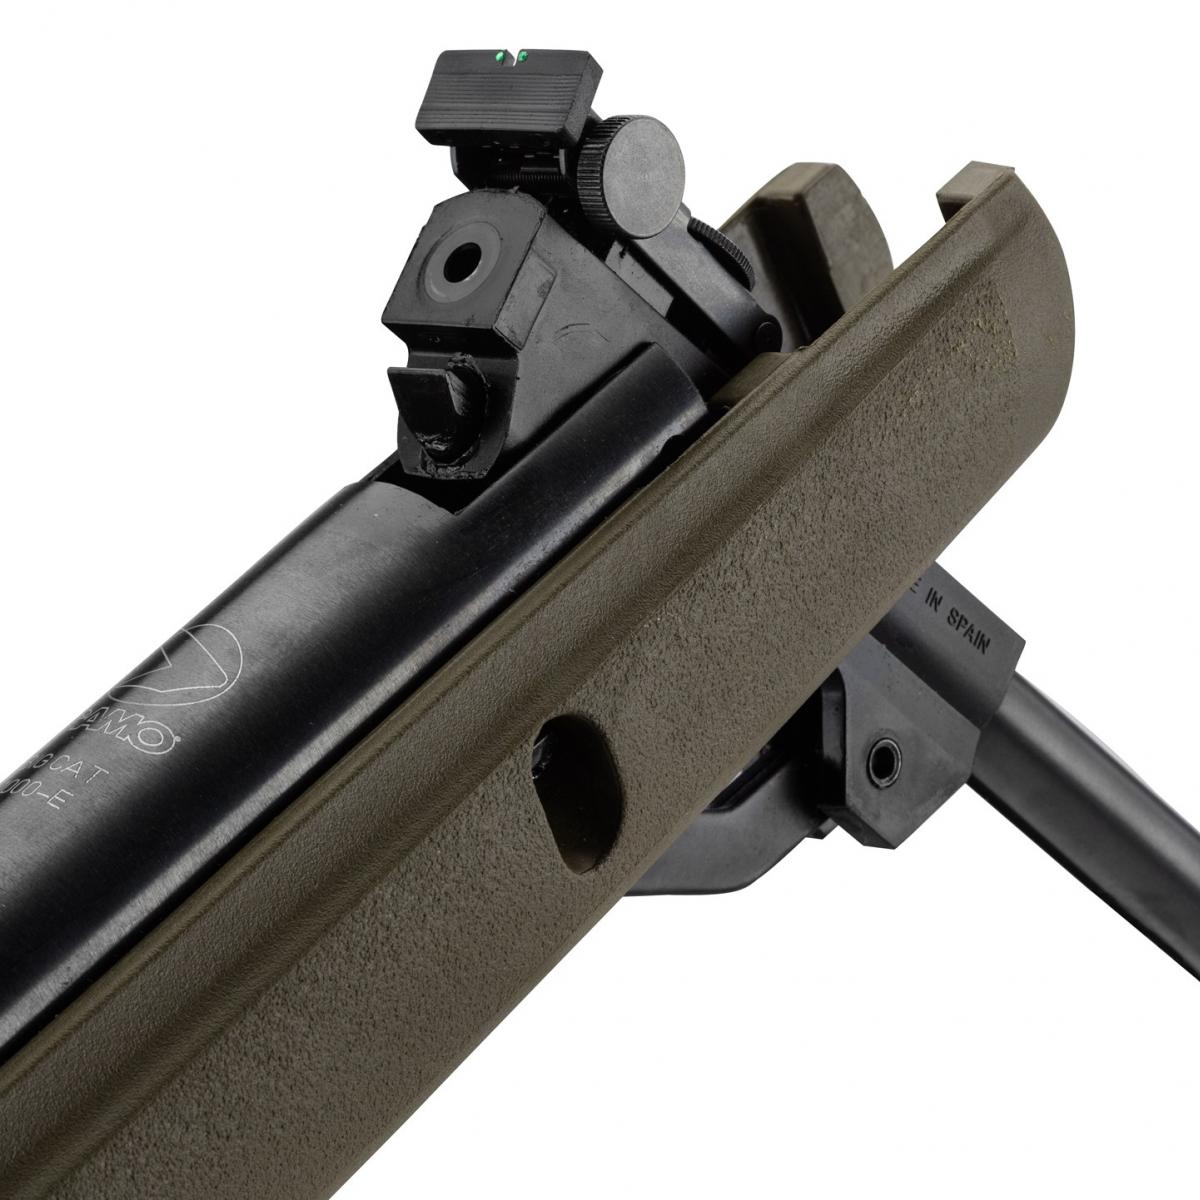 Pistolet à Plomb Gamo P900 Air Comprimé 2,9j 4,5mm